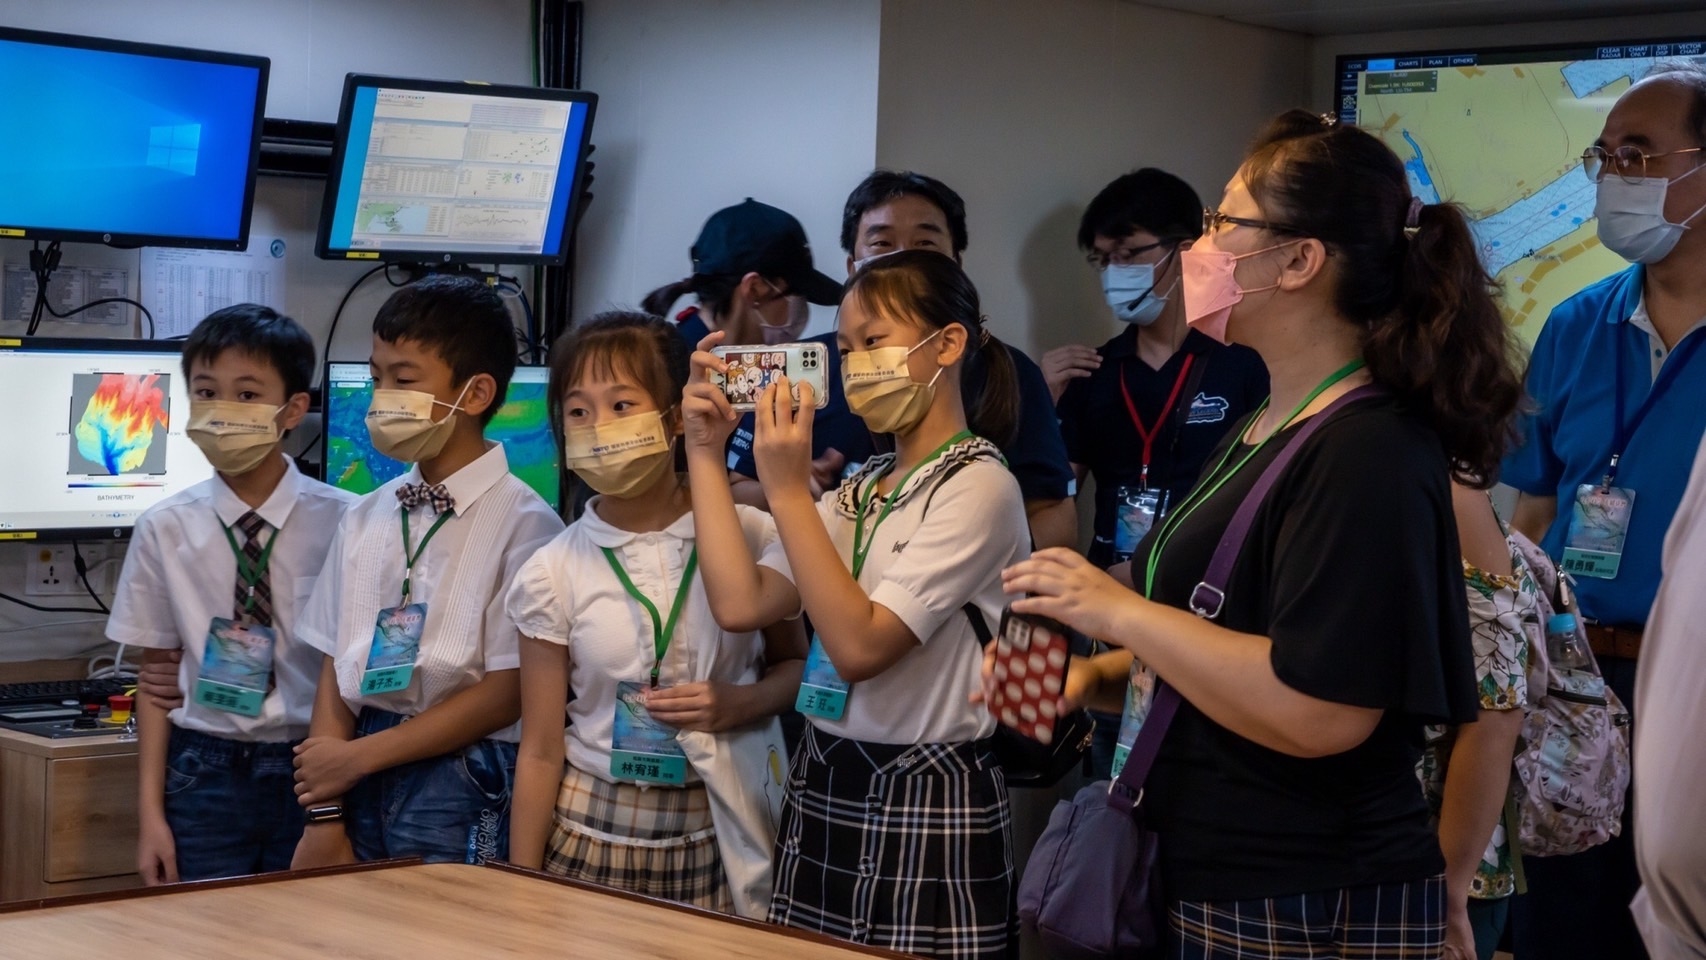 全民參與基礎科學是政府的目標，希望透過各種活動，讓學校師生和社會大眾，多加認識基礎科學研究，也為台灣的永續發展，貢獻一份力量。